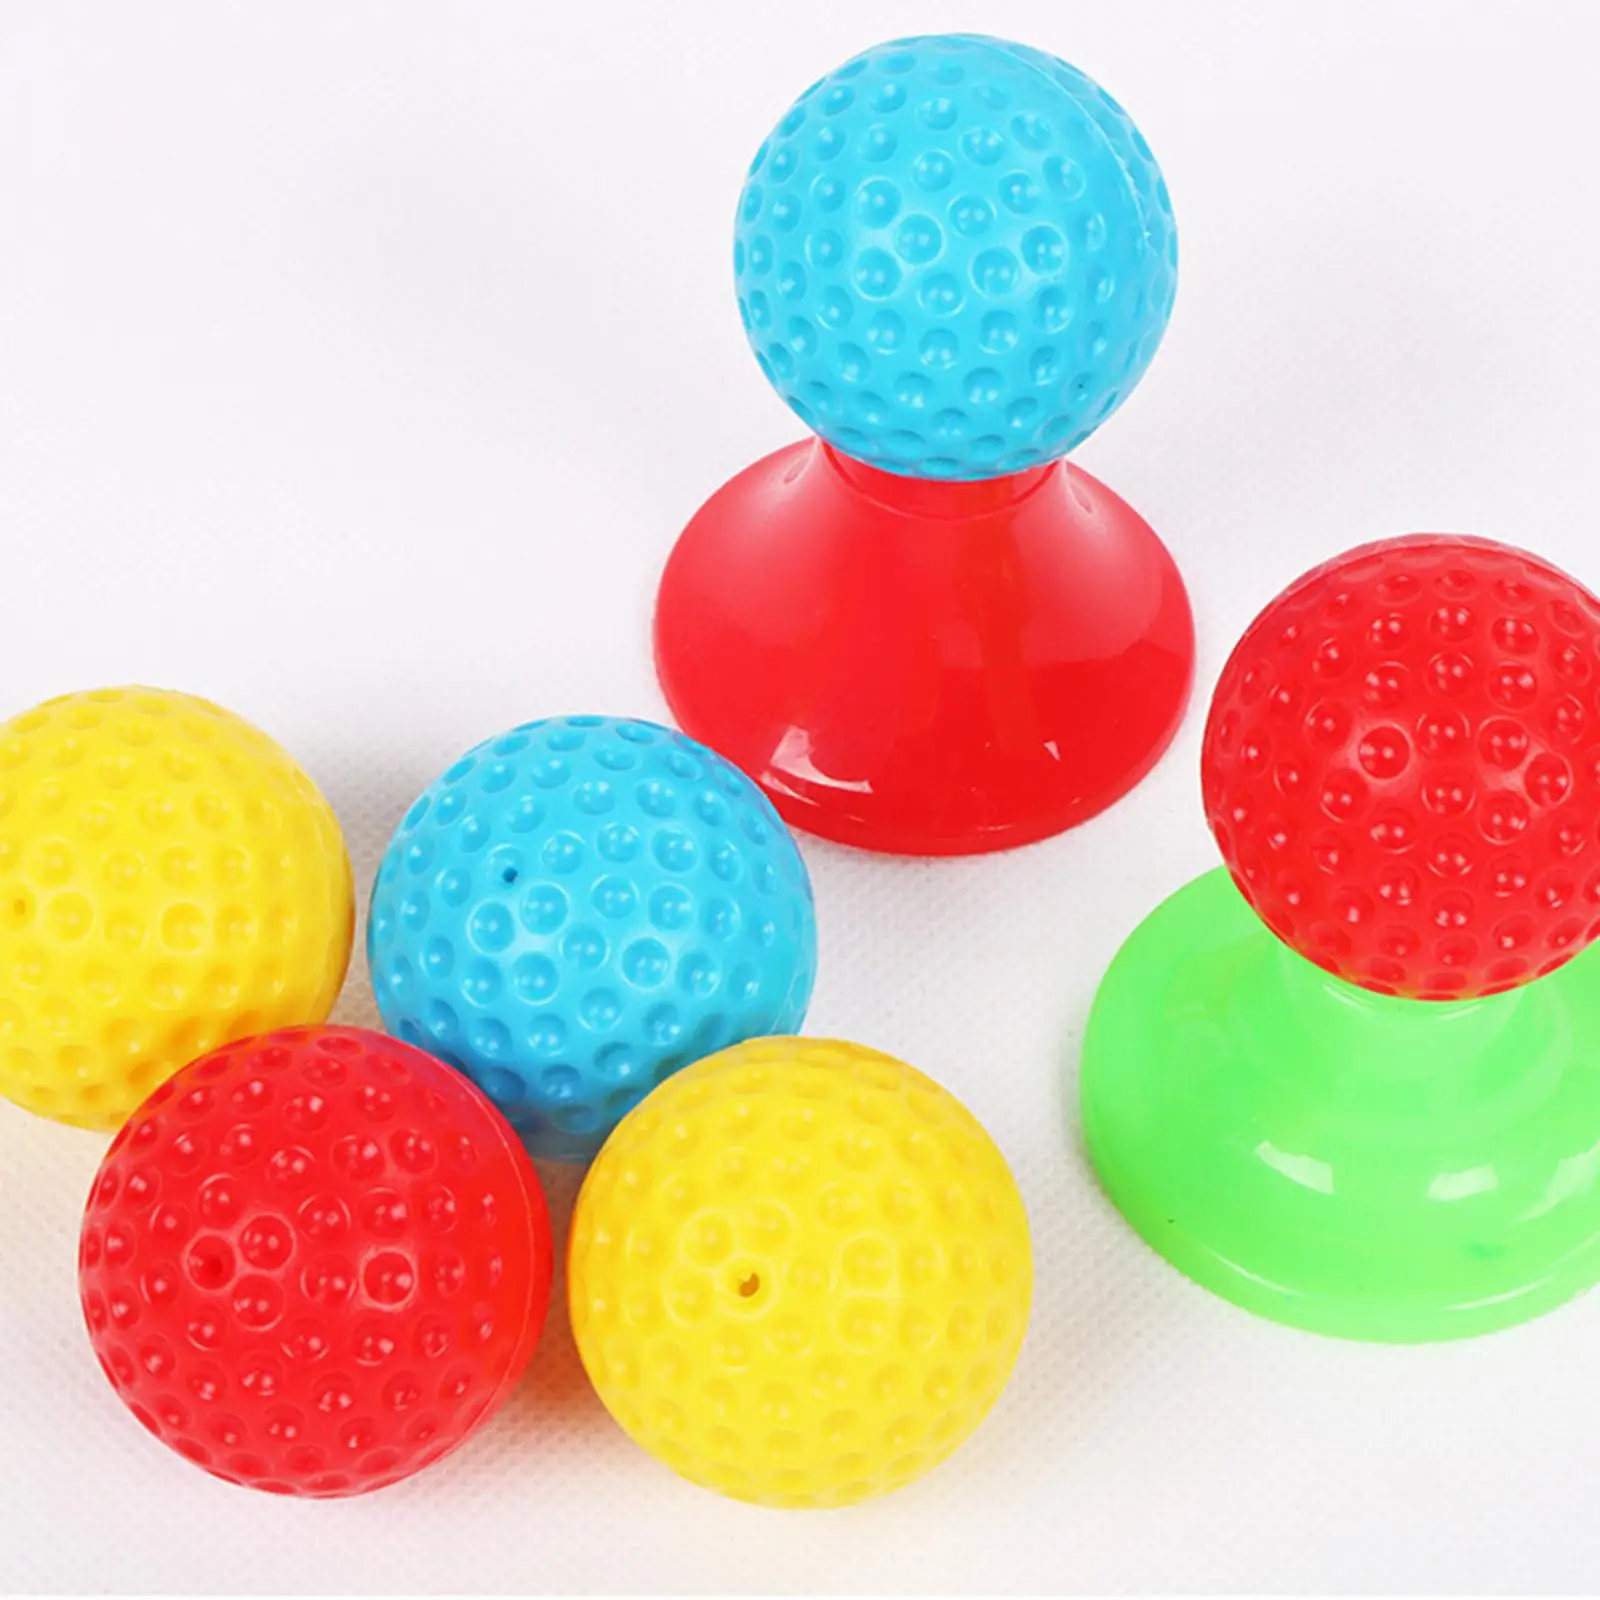 Golf Club Set, Golf Caddy Set toys Golf Club Set Golf Club Set Sports Kids Sport Toy for indoor e outdoor